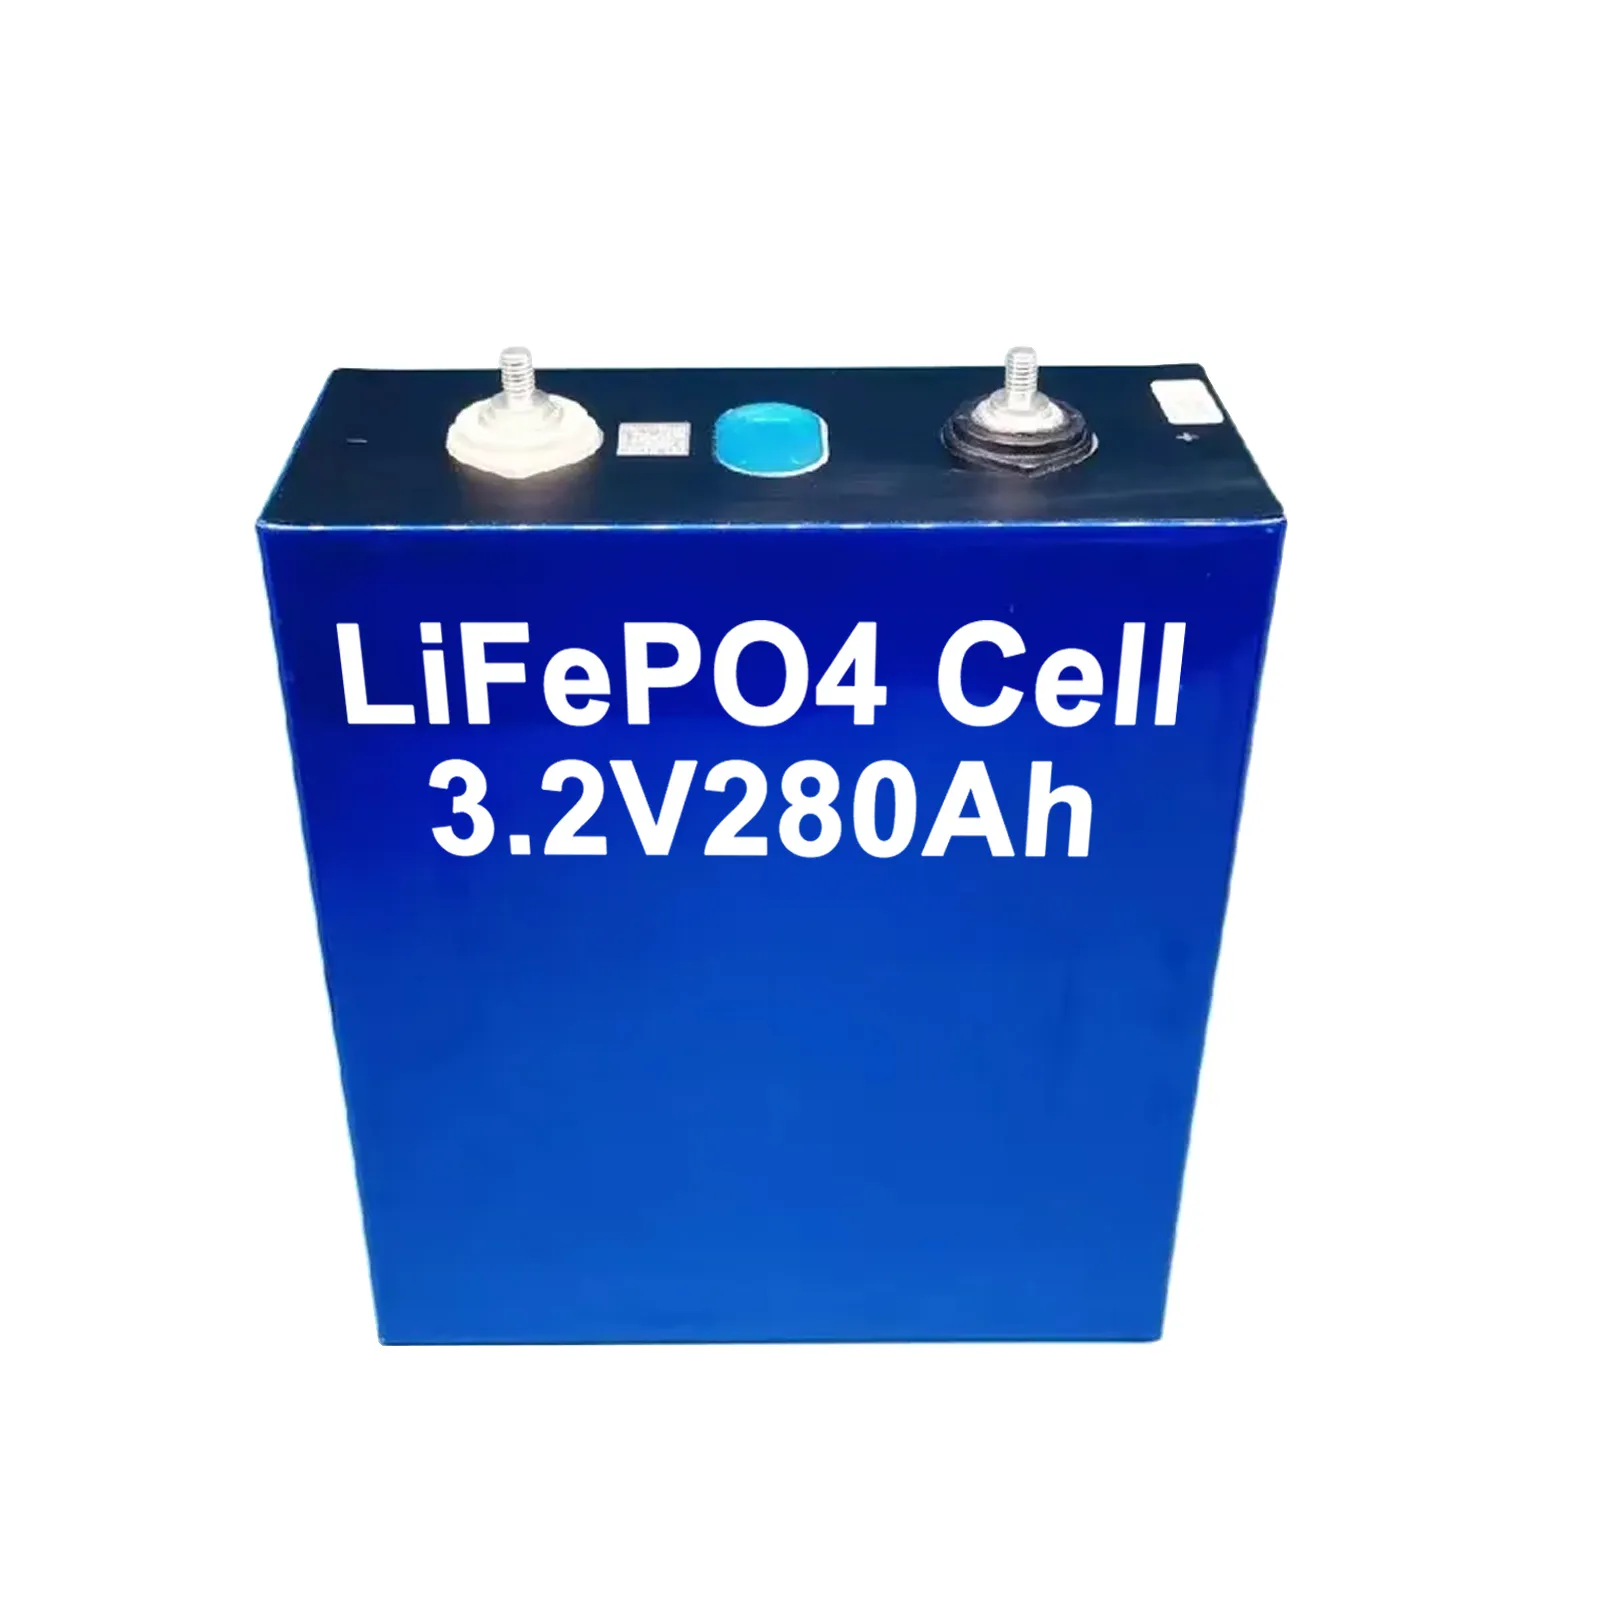 Stok gudang US/GE/CA sel baterai lithium 3.2V 280ah lifepo4 baterai 280ah 3.2V untuk penyimpanan energi